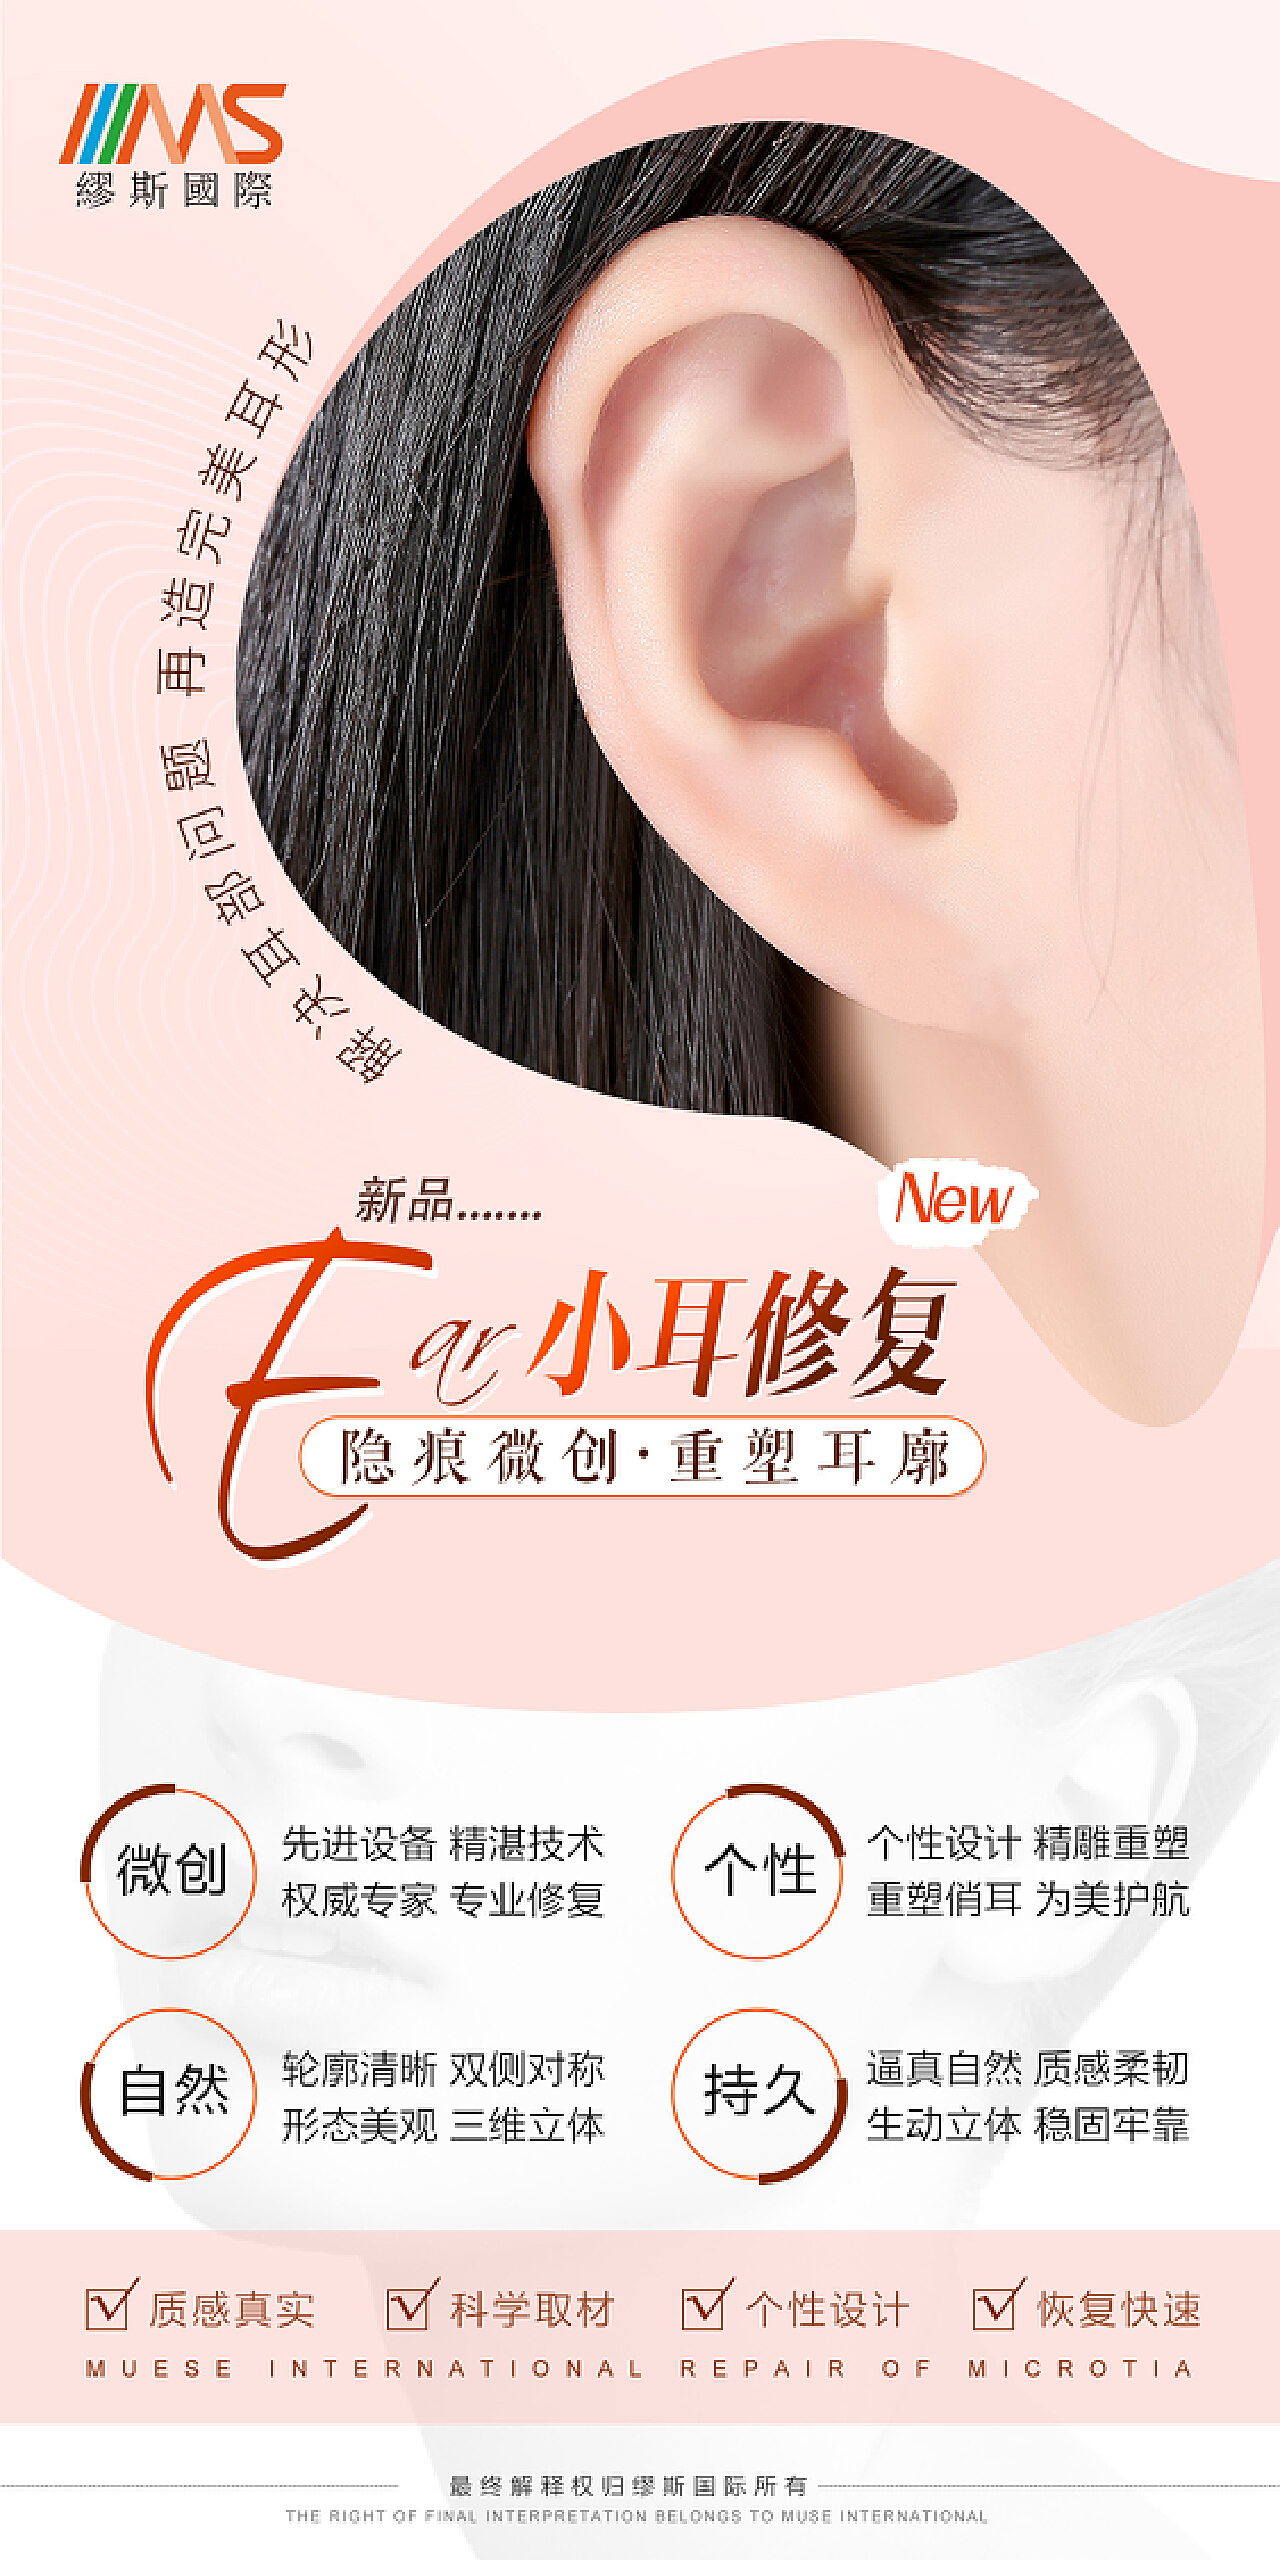 八大处于晓波医生耳畸形修复/耳再造案例图集(持续更新。。。)_小耳畸形_小耳畸形治疗方式 - 好大夫在线